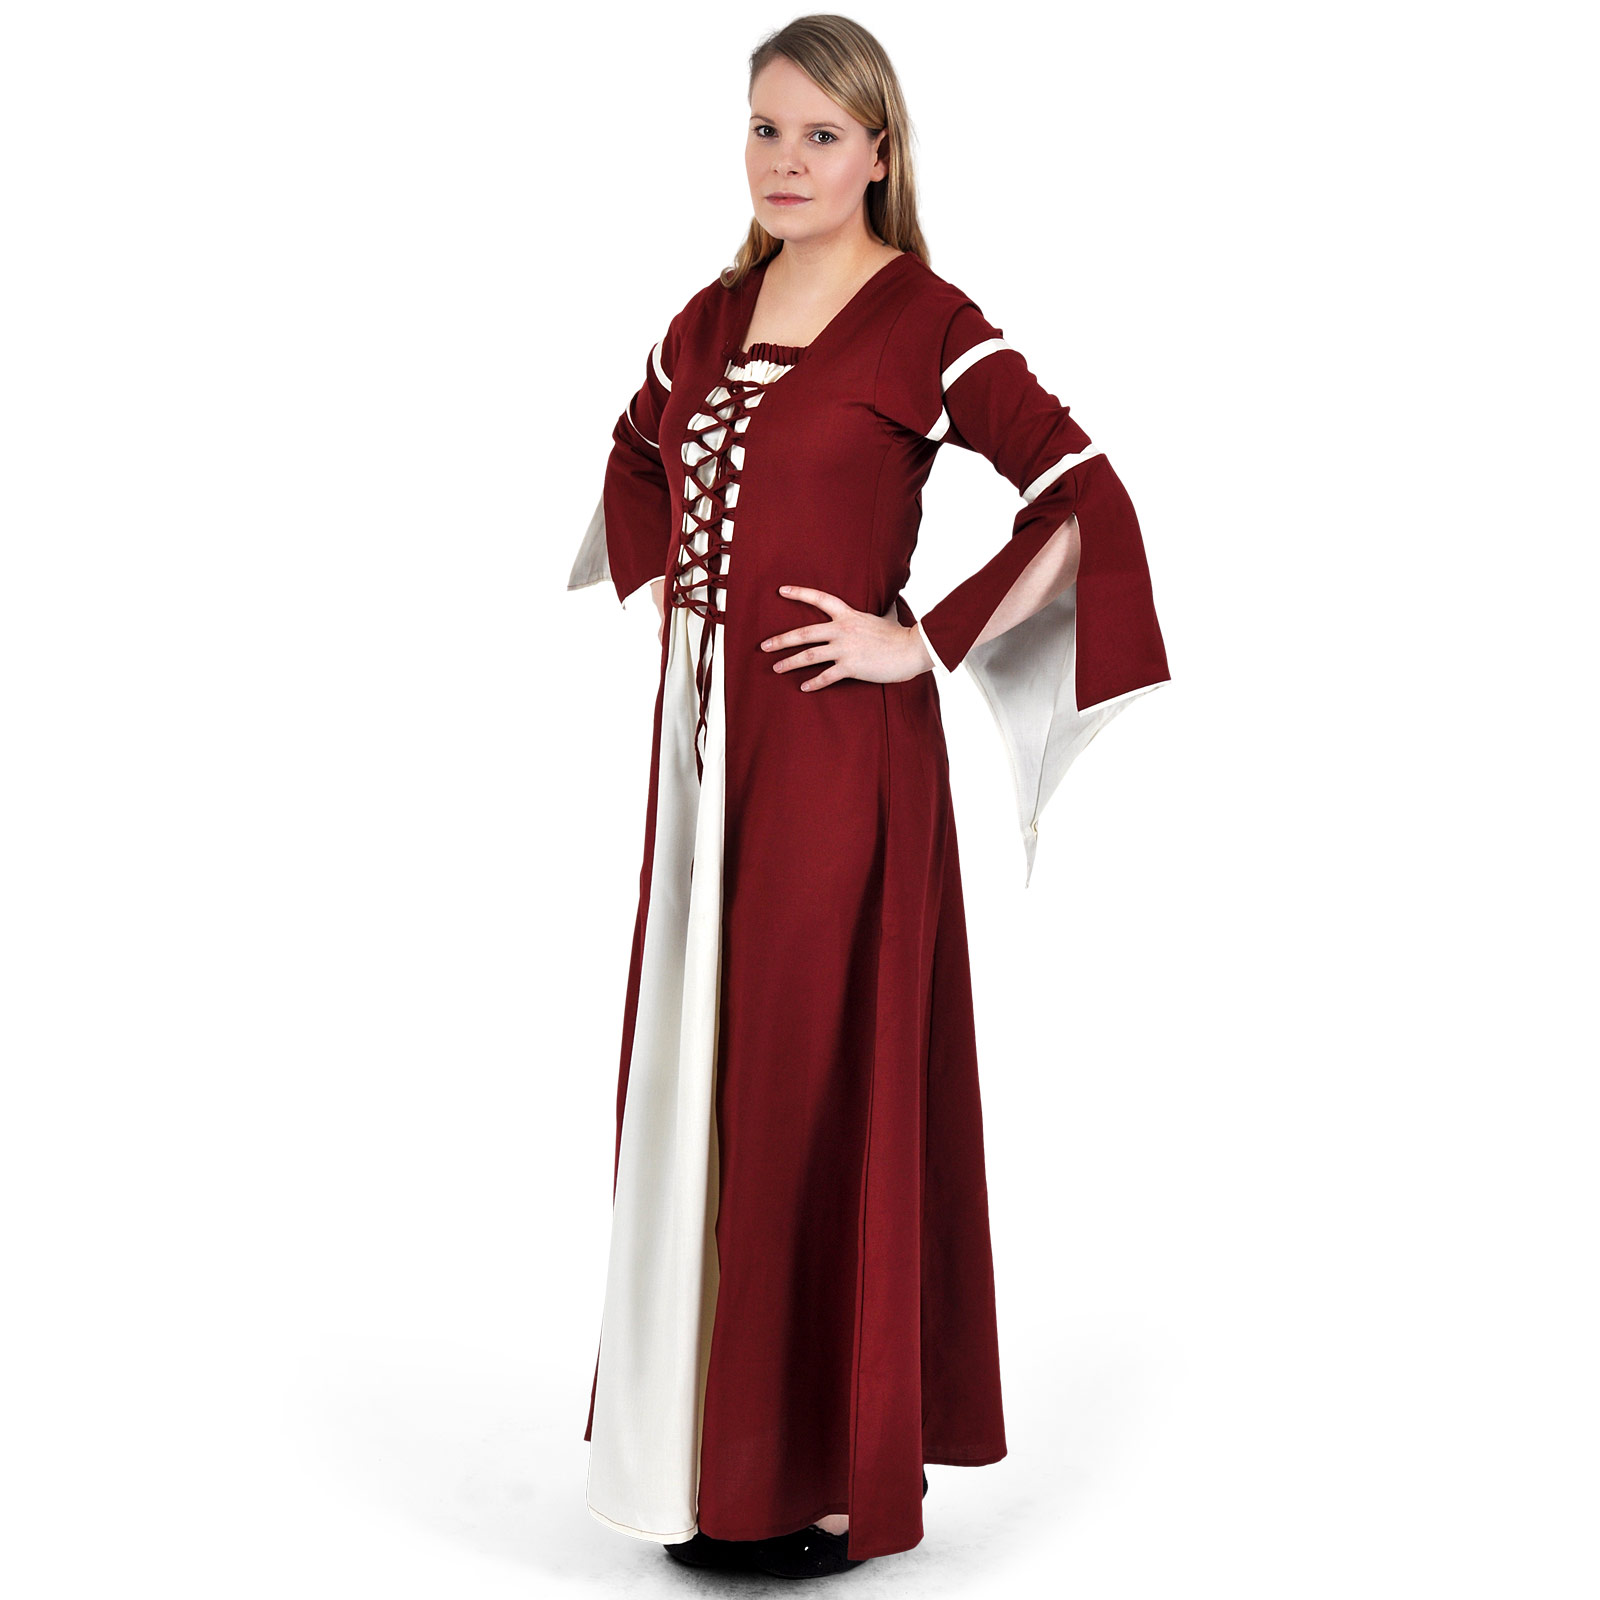 Mittelalter Kleid Katherina rot-natur